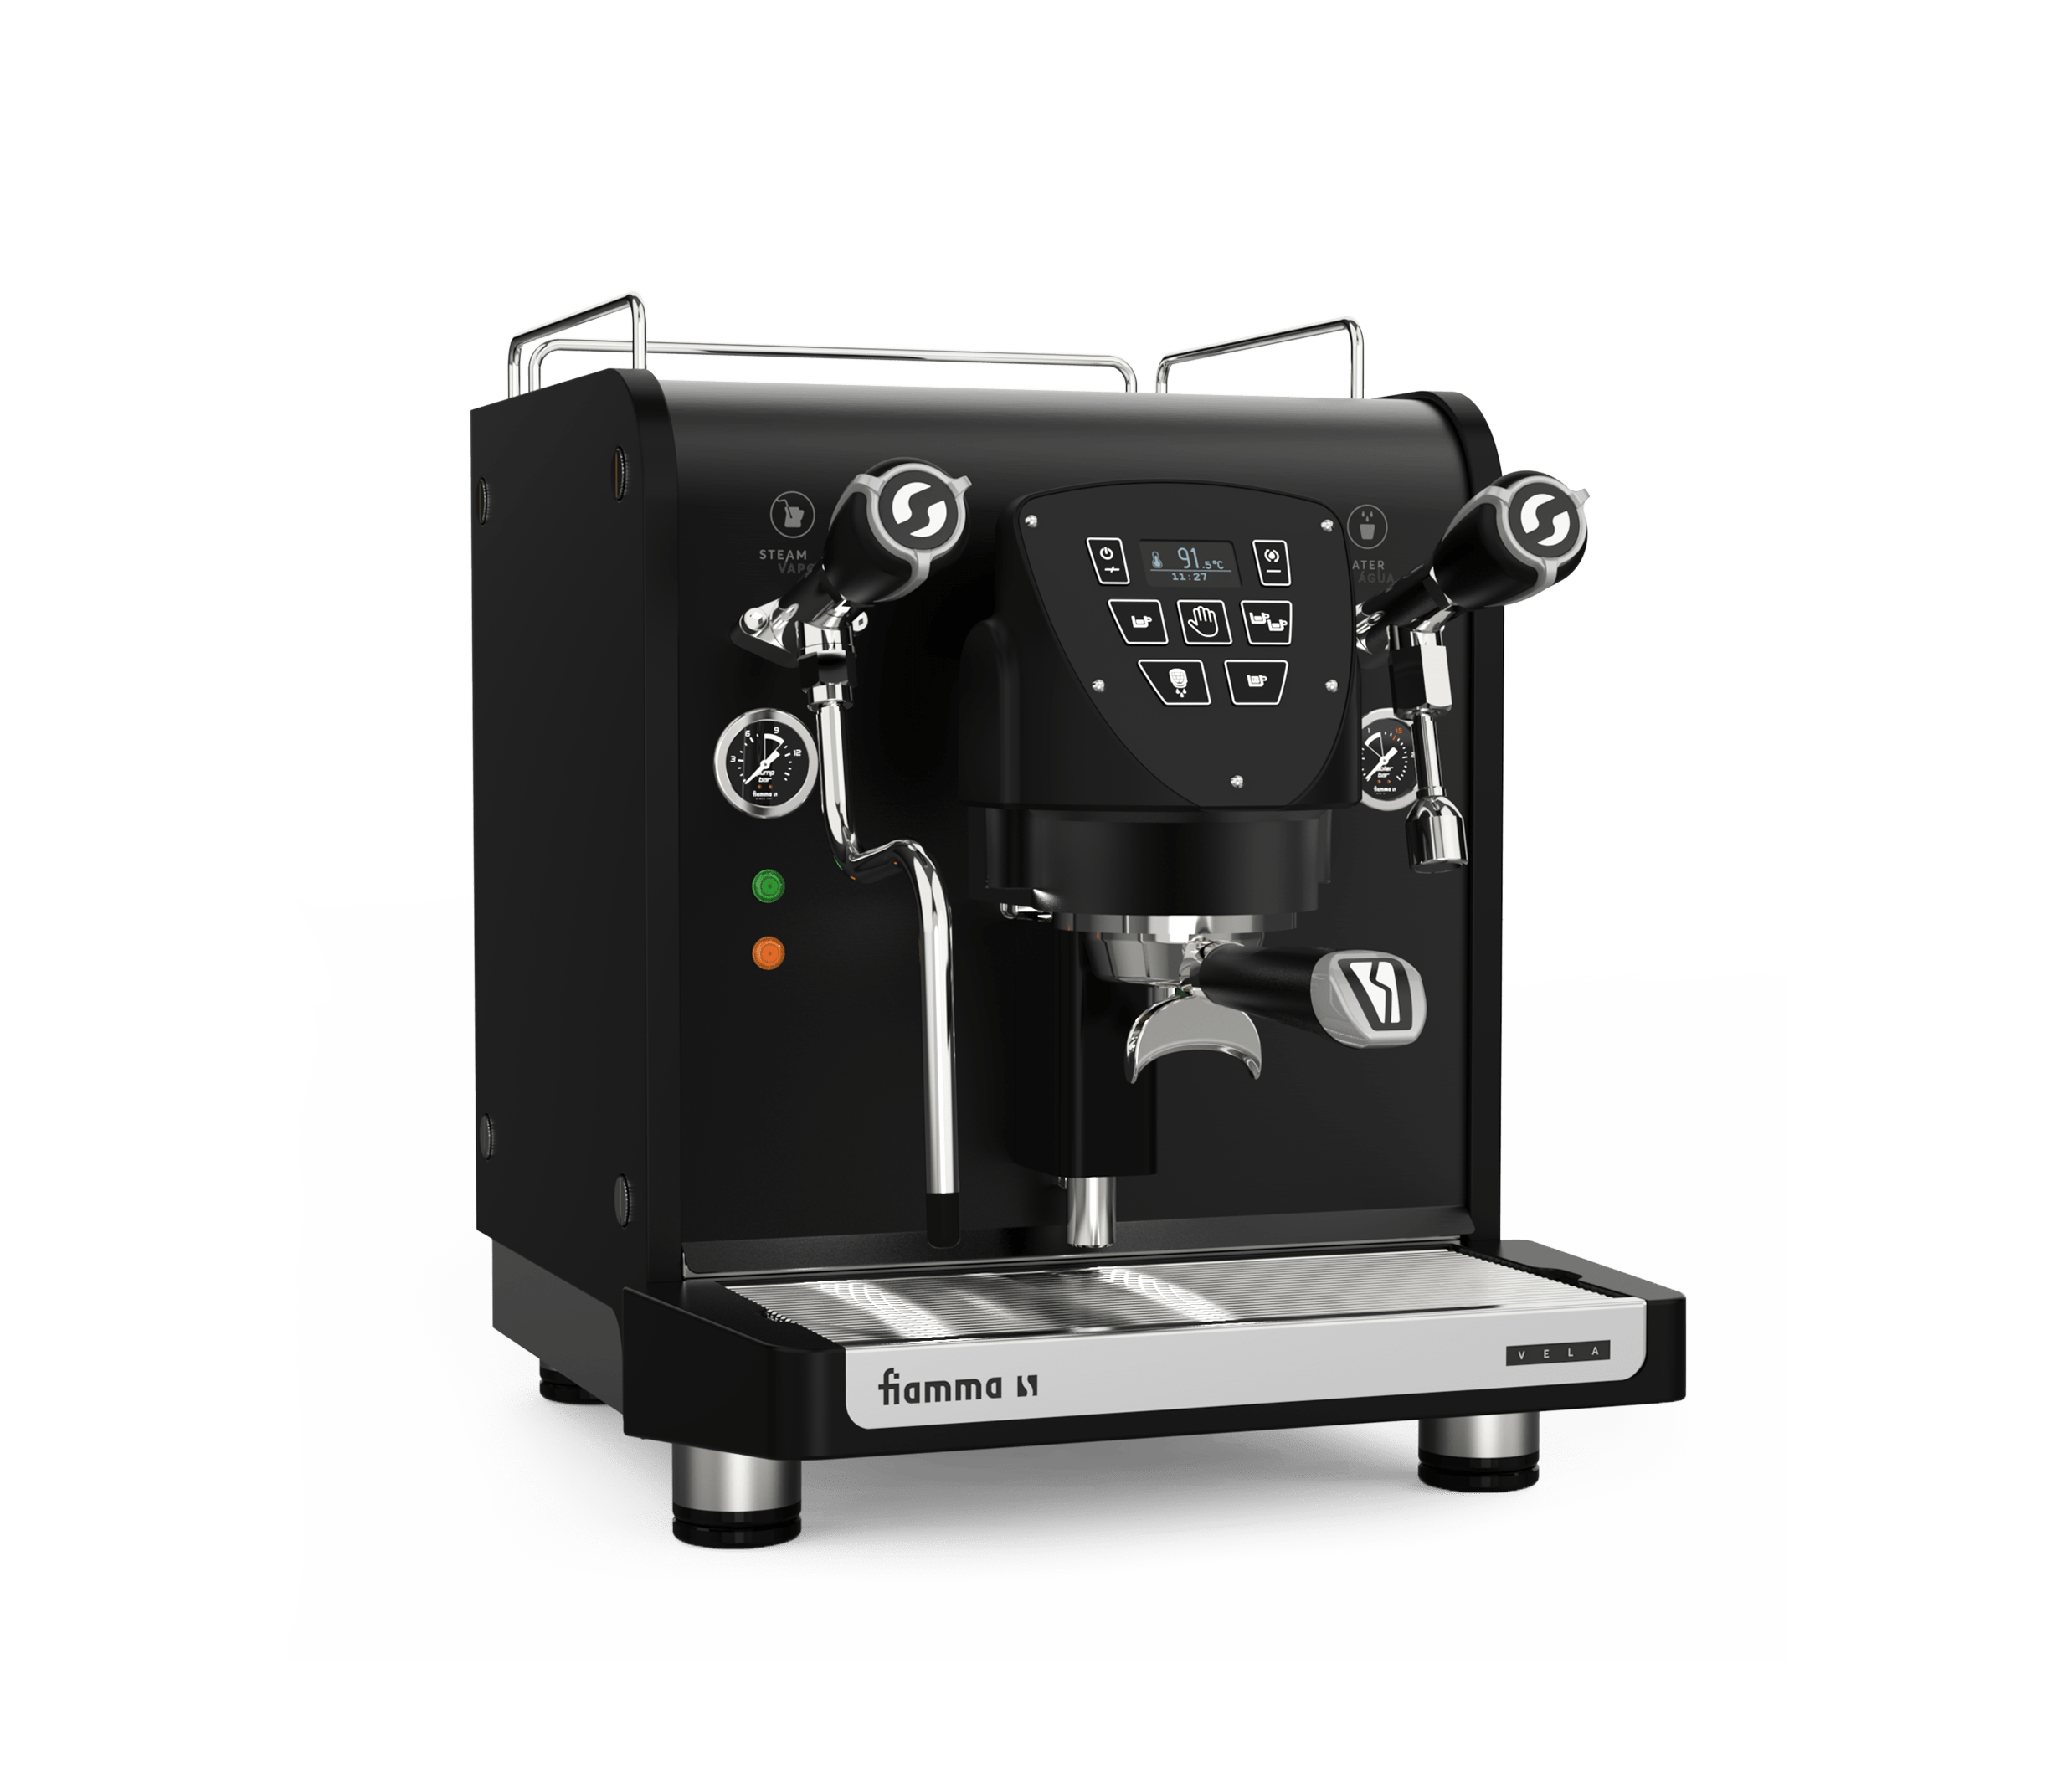 Fiamma Espresso Coffee Machine